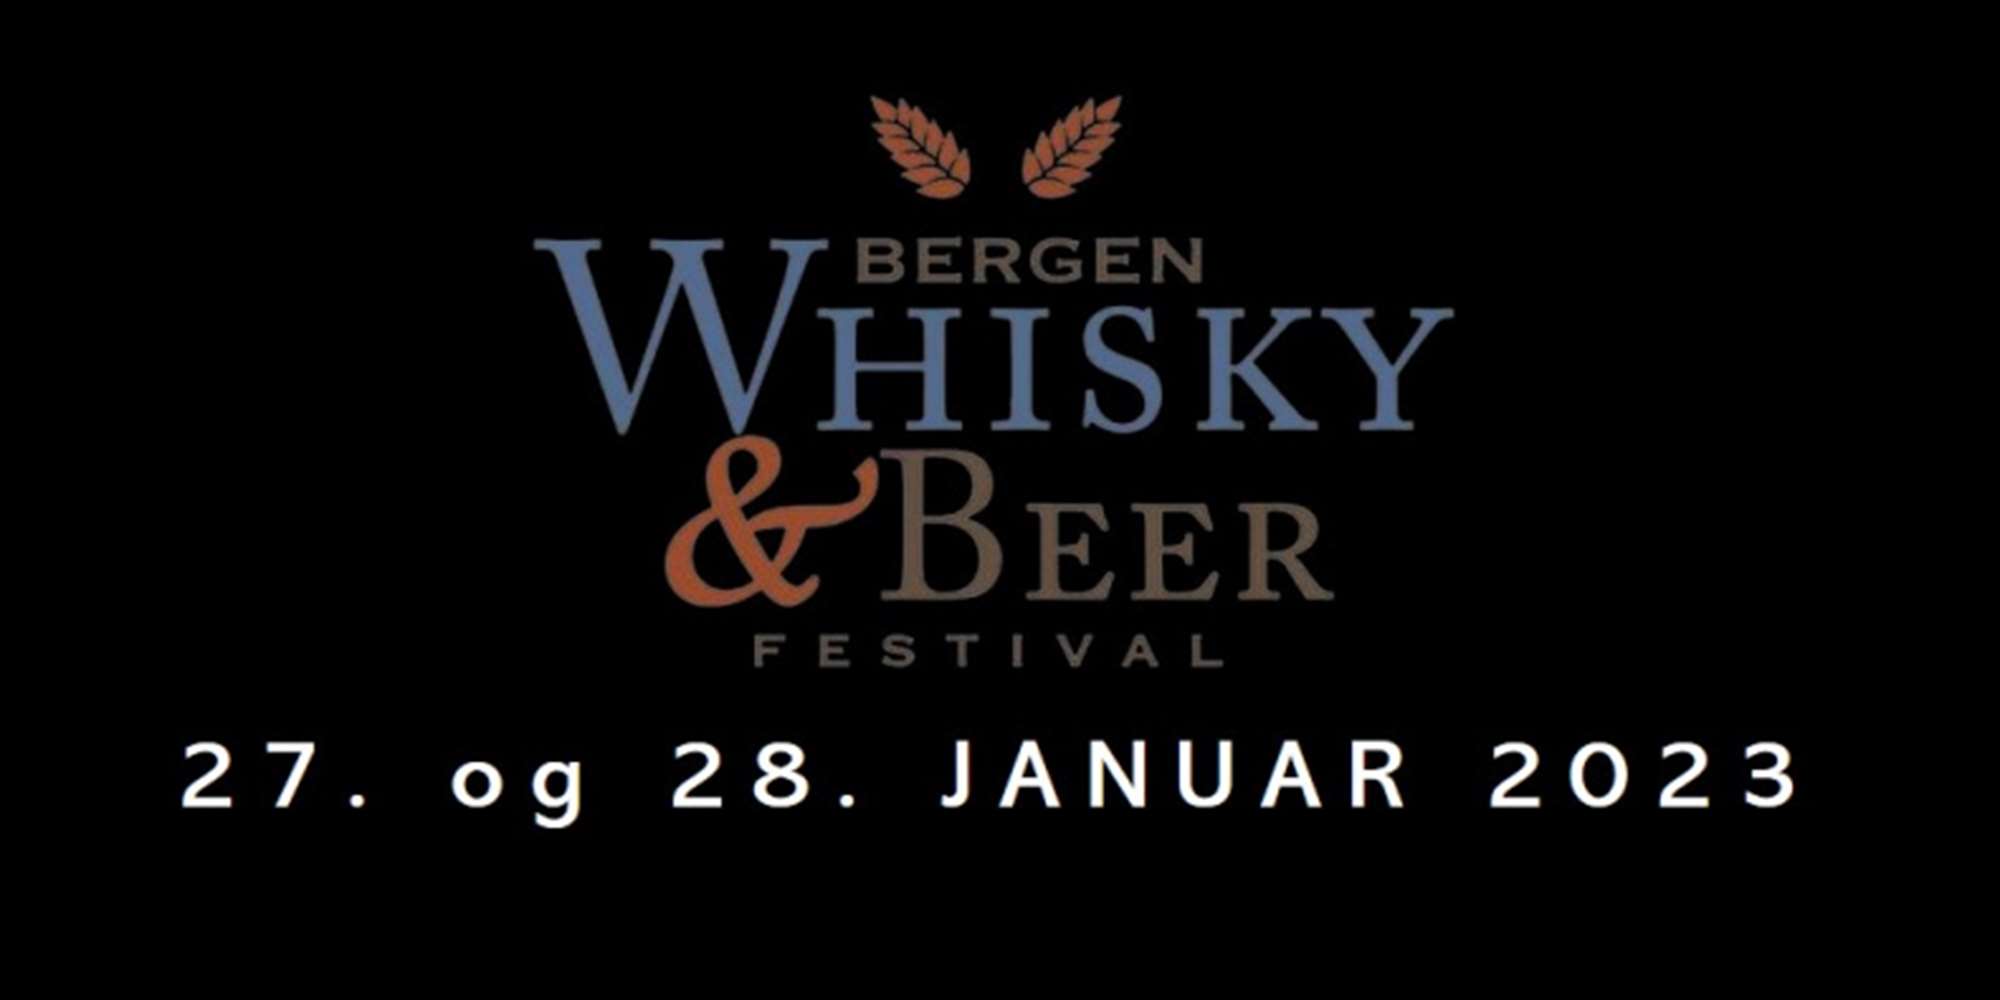 Bergen Whisky & Beer Festival